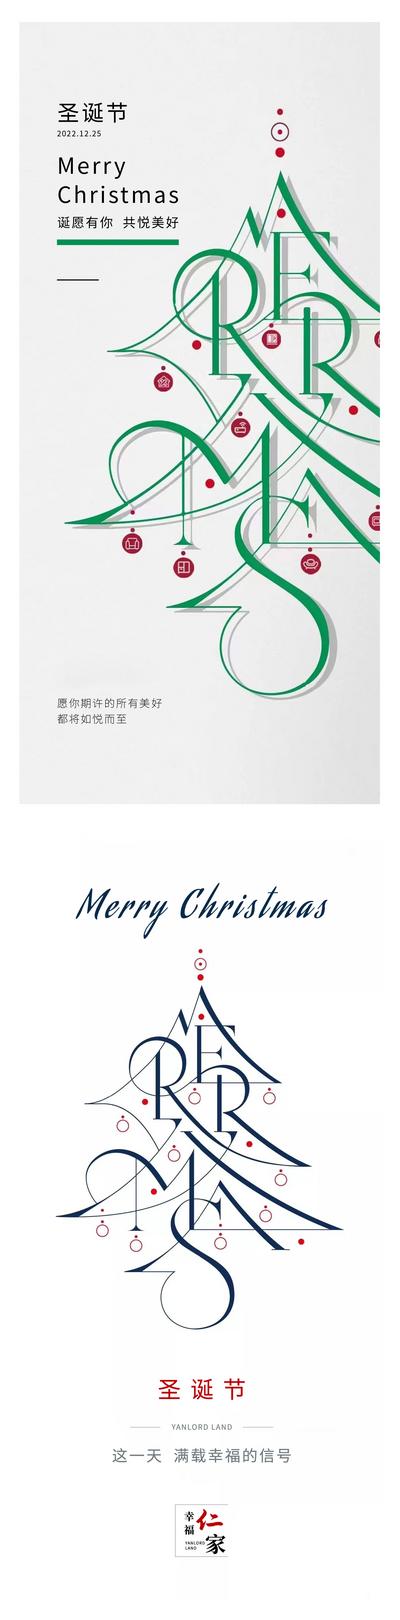 南门网 广告 海报 节日 圣诞节 圣诞树 插画 简约